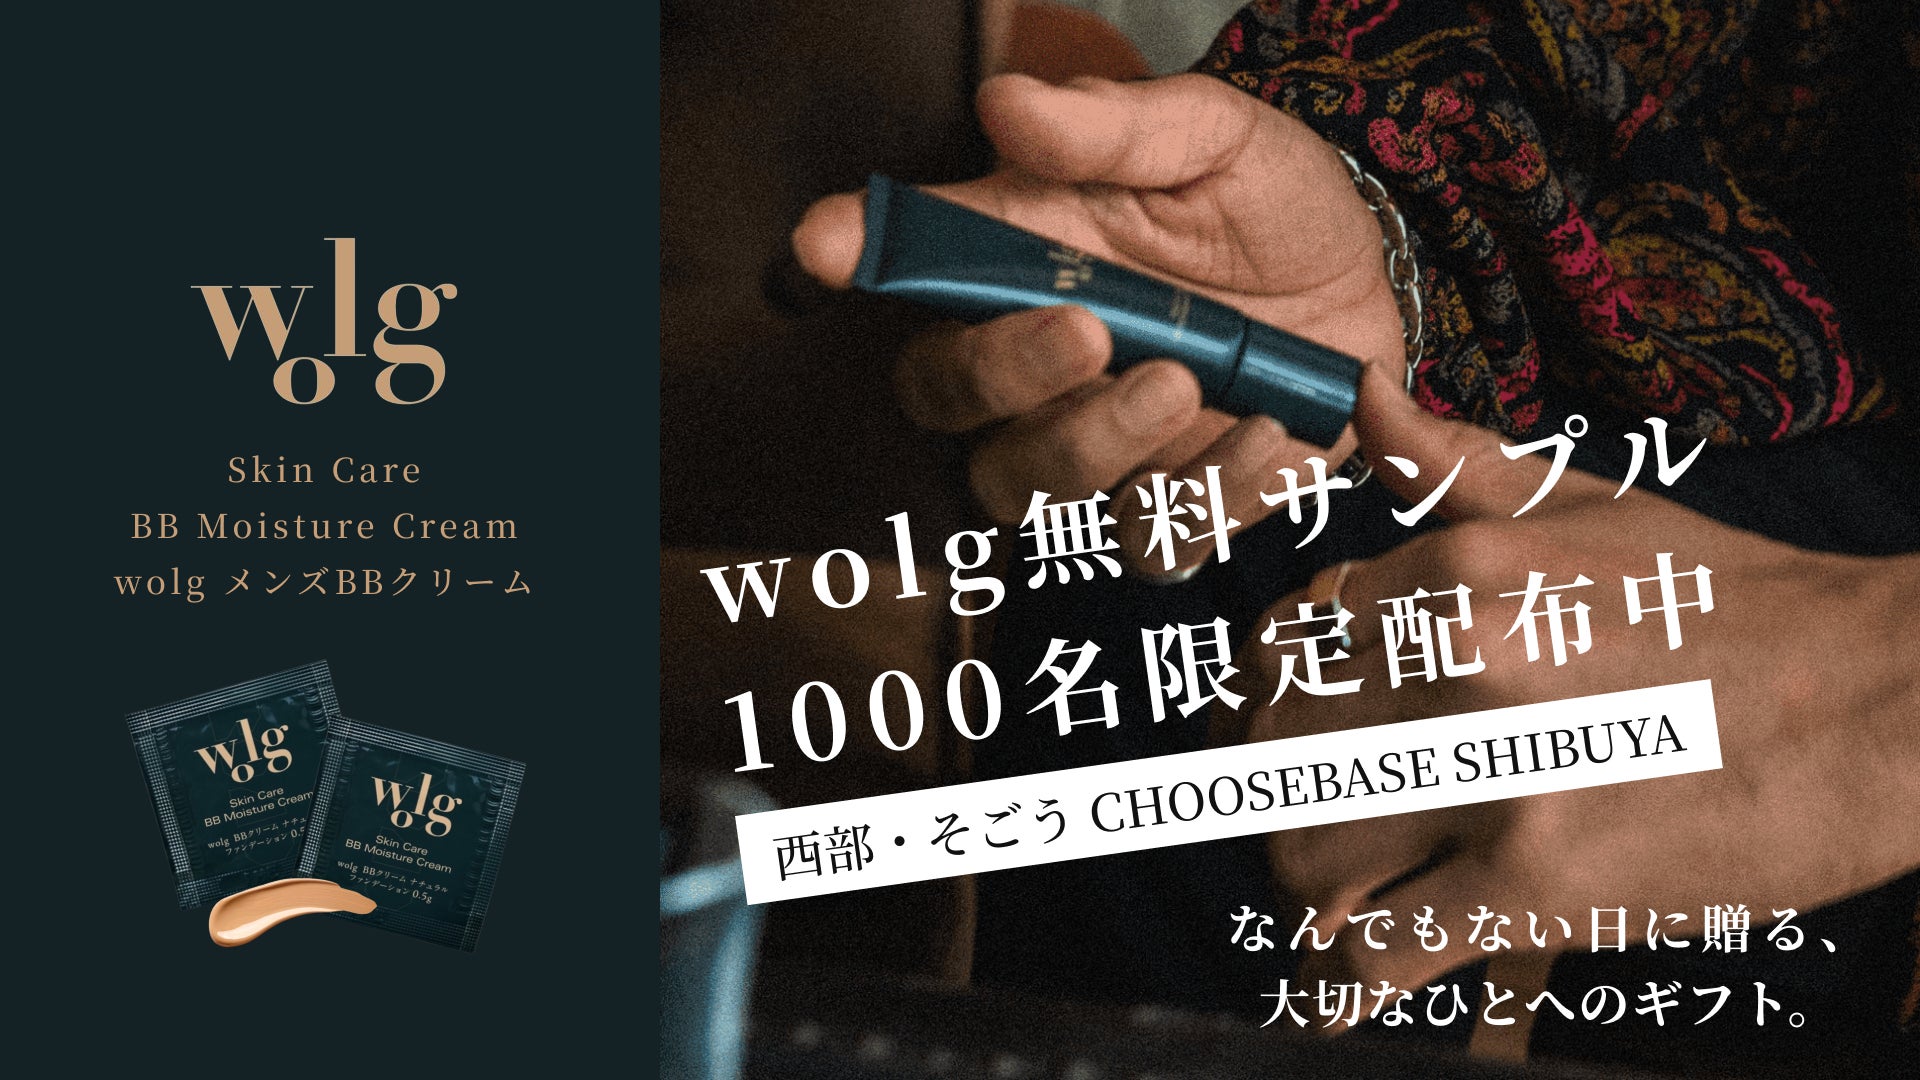 メンズコスメWOLGがCHOOSEBASE SHIBUYAに初出店。”何でもない日に贈る大切な人へのギフト”をテーマに、サンプル無料配布イベントを開催